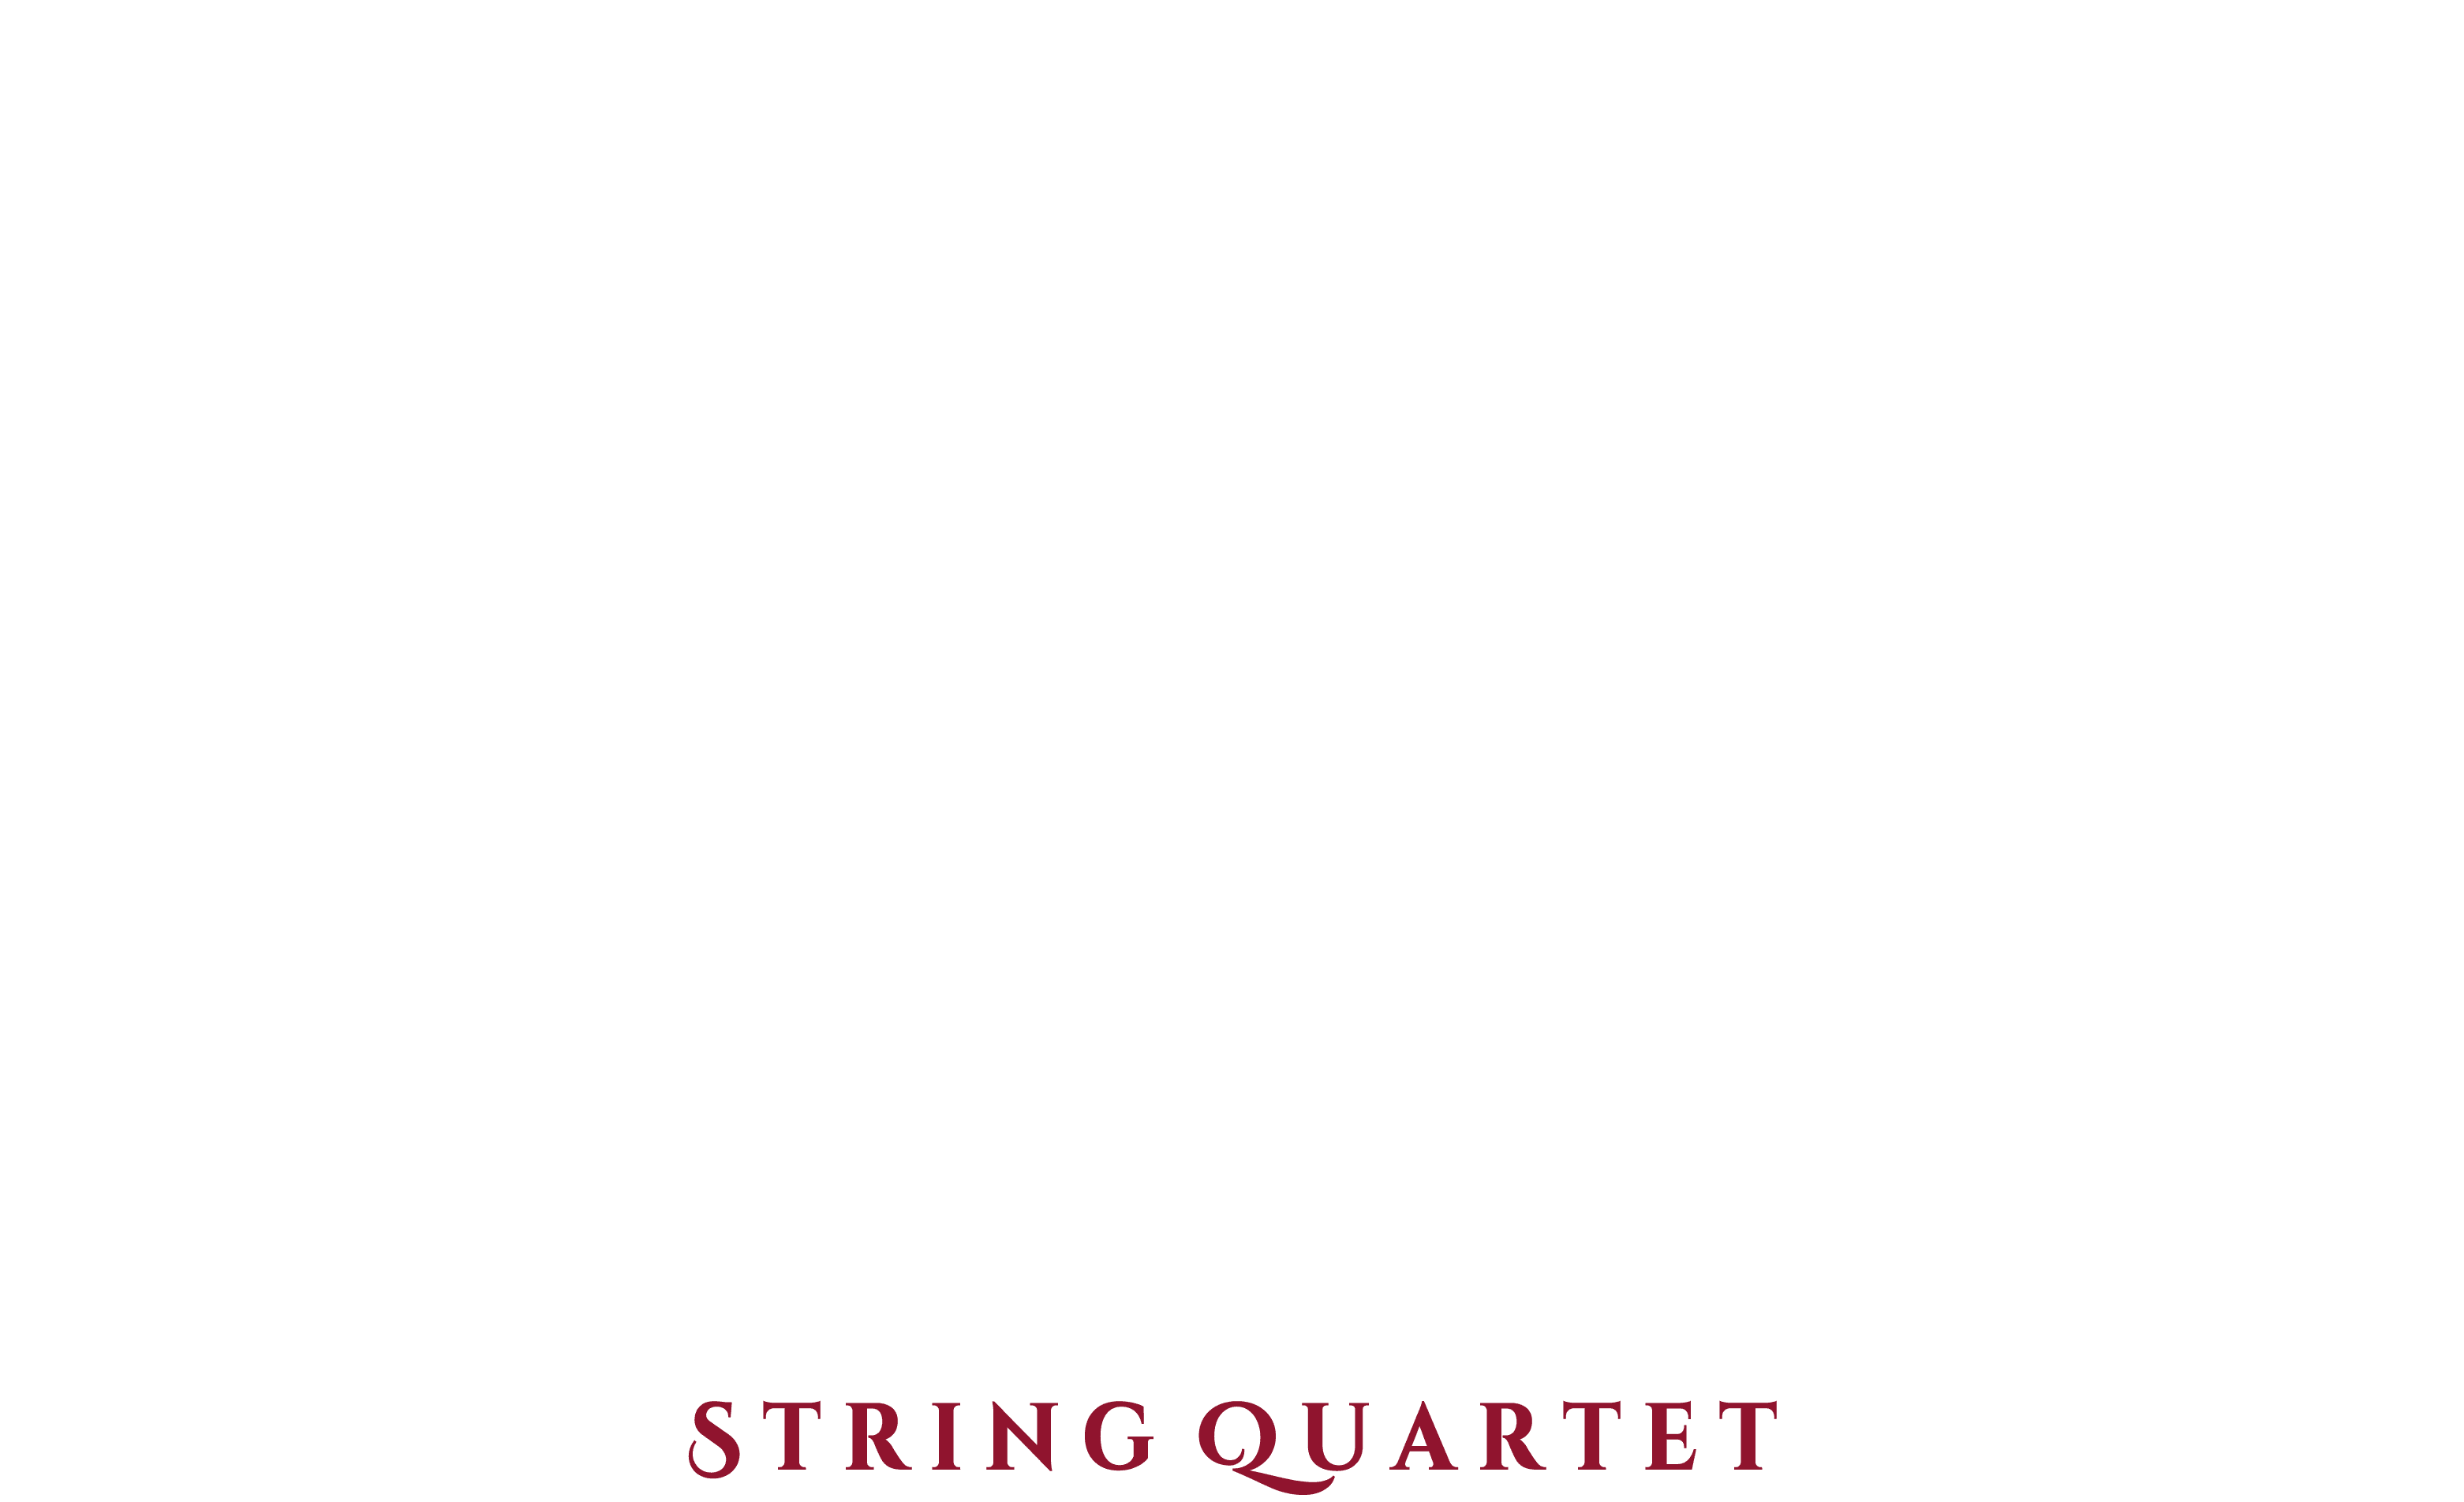 Quartetto Artemisia